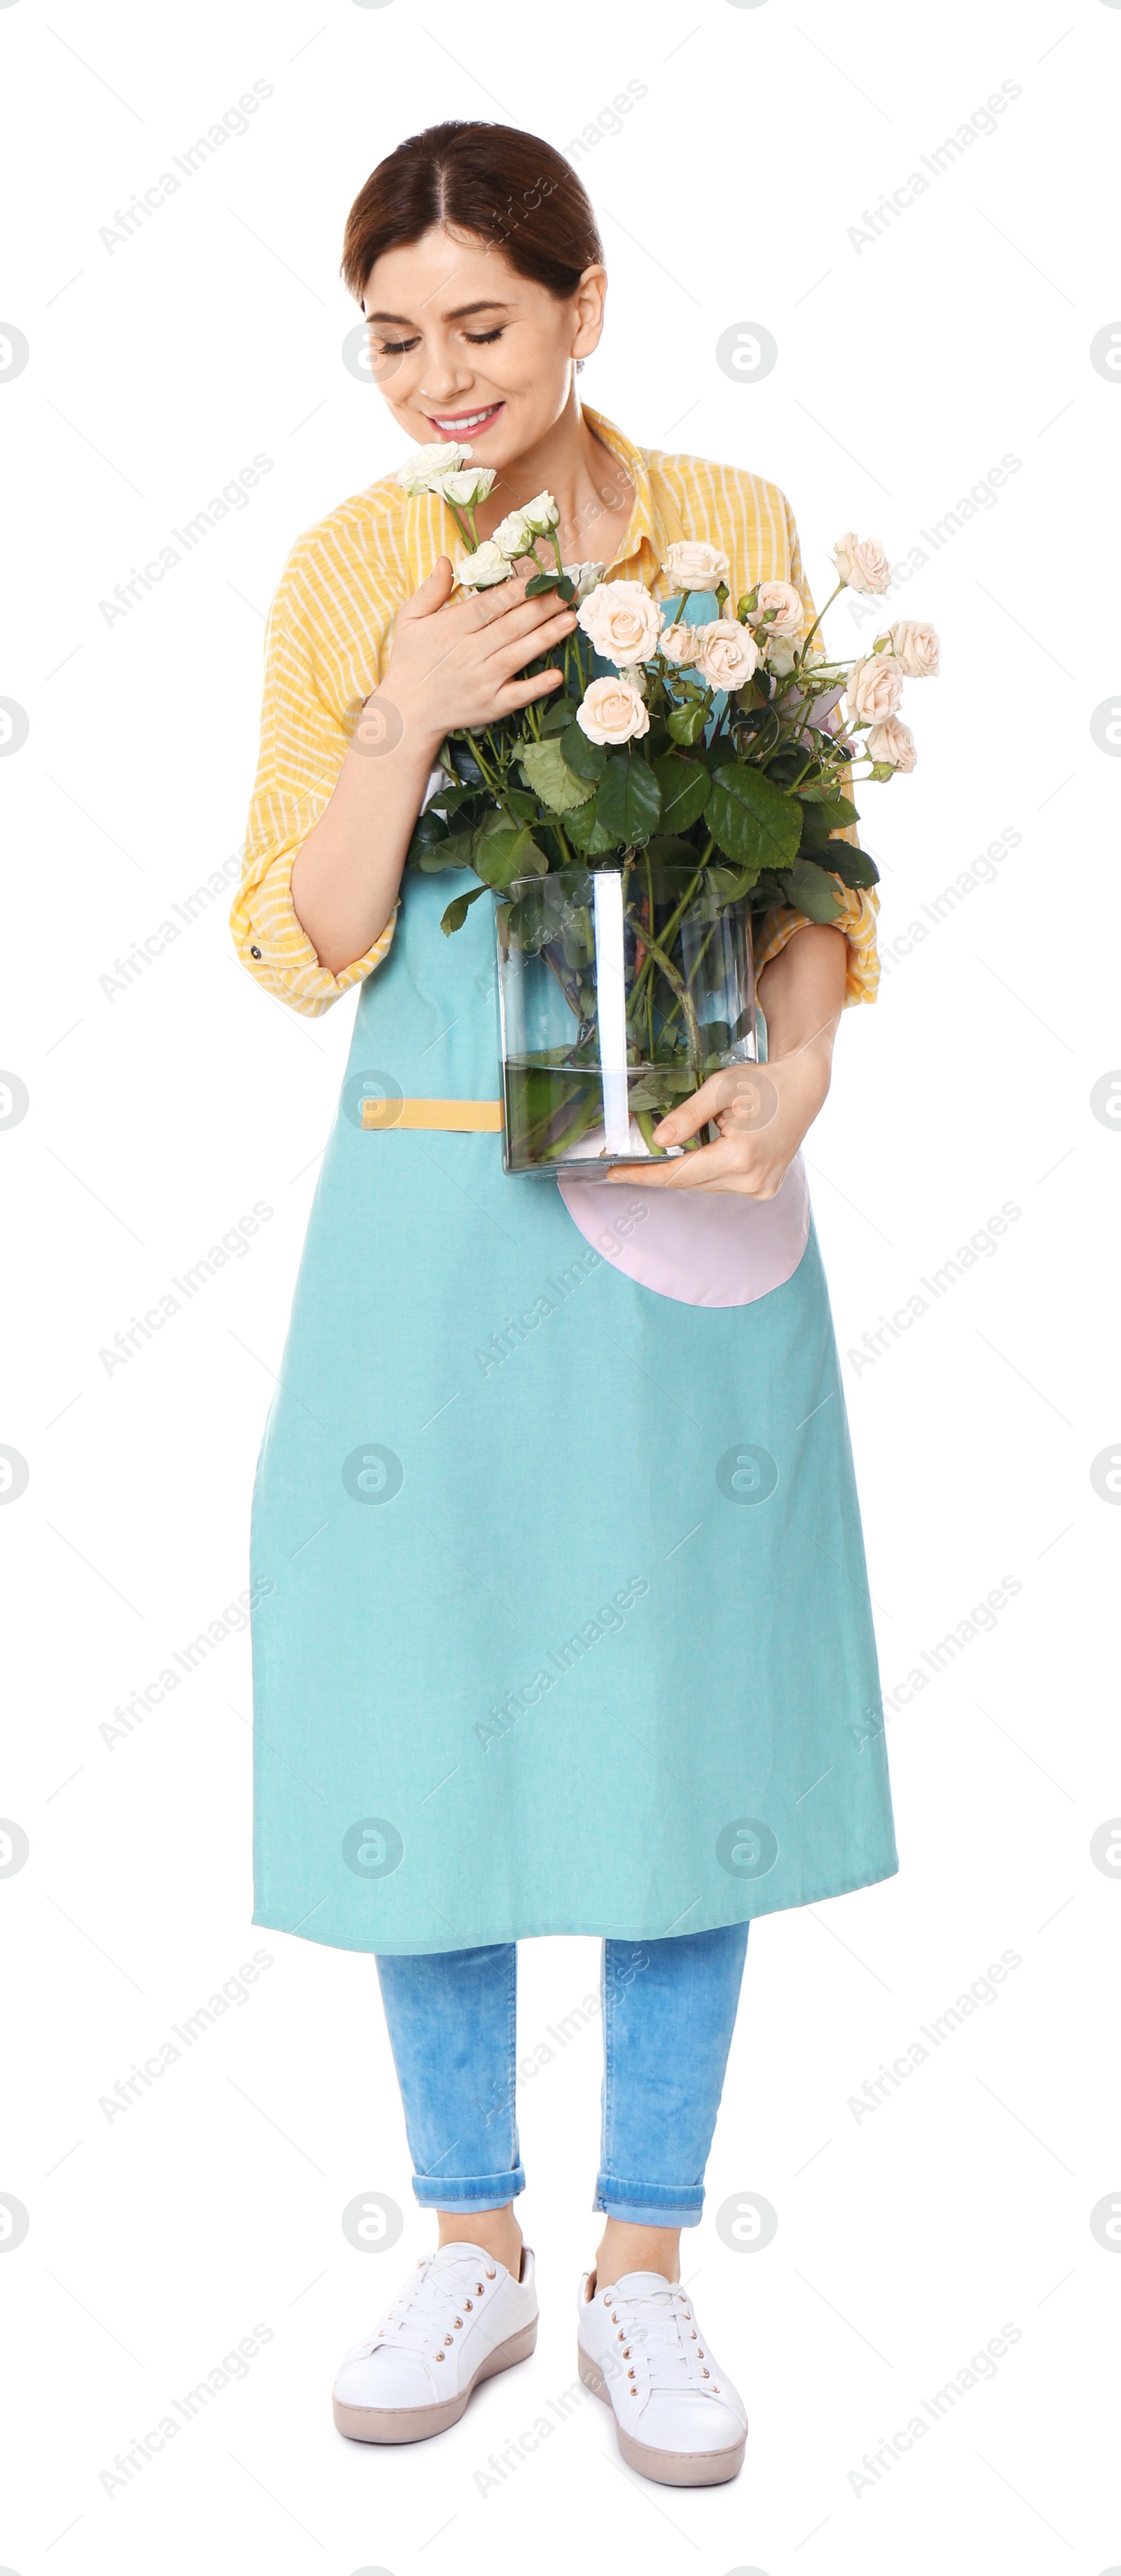 Photo of Female florist holding vase with roses on white background